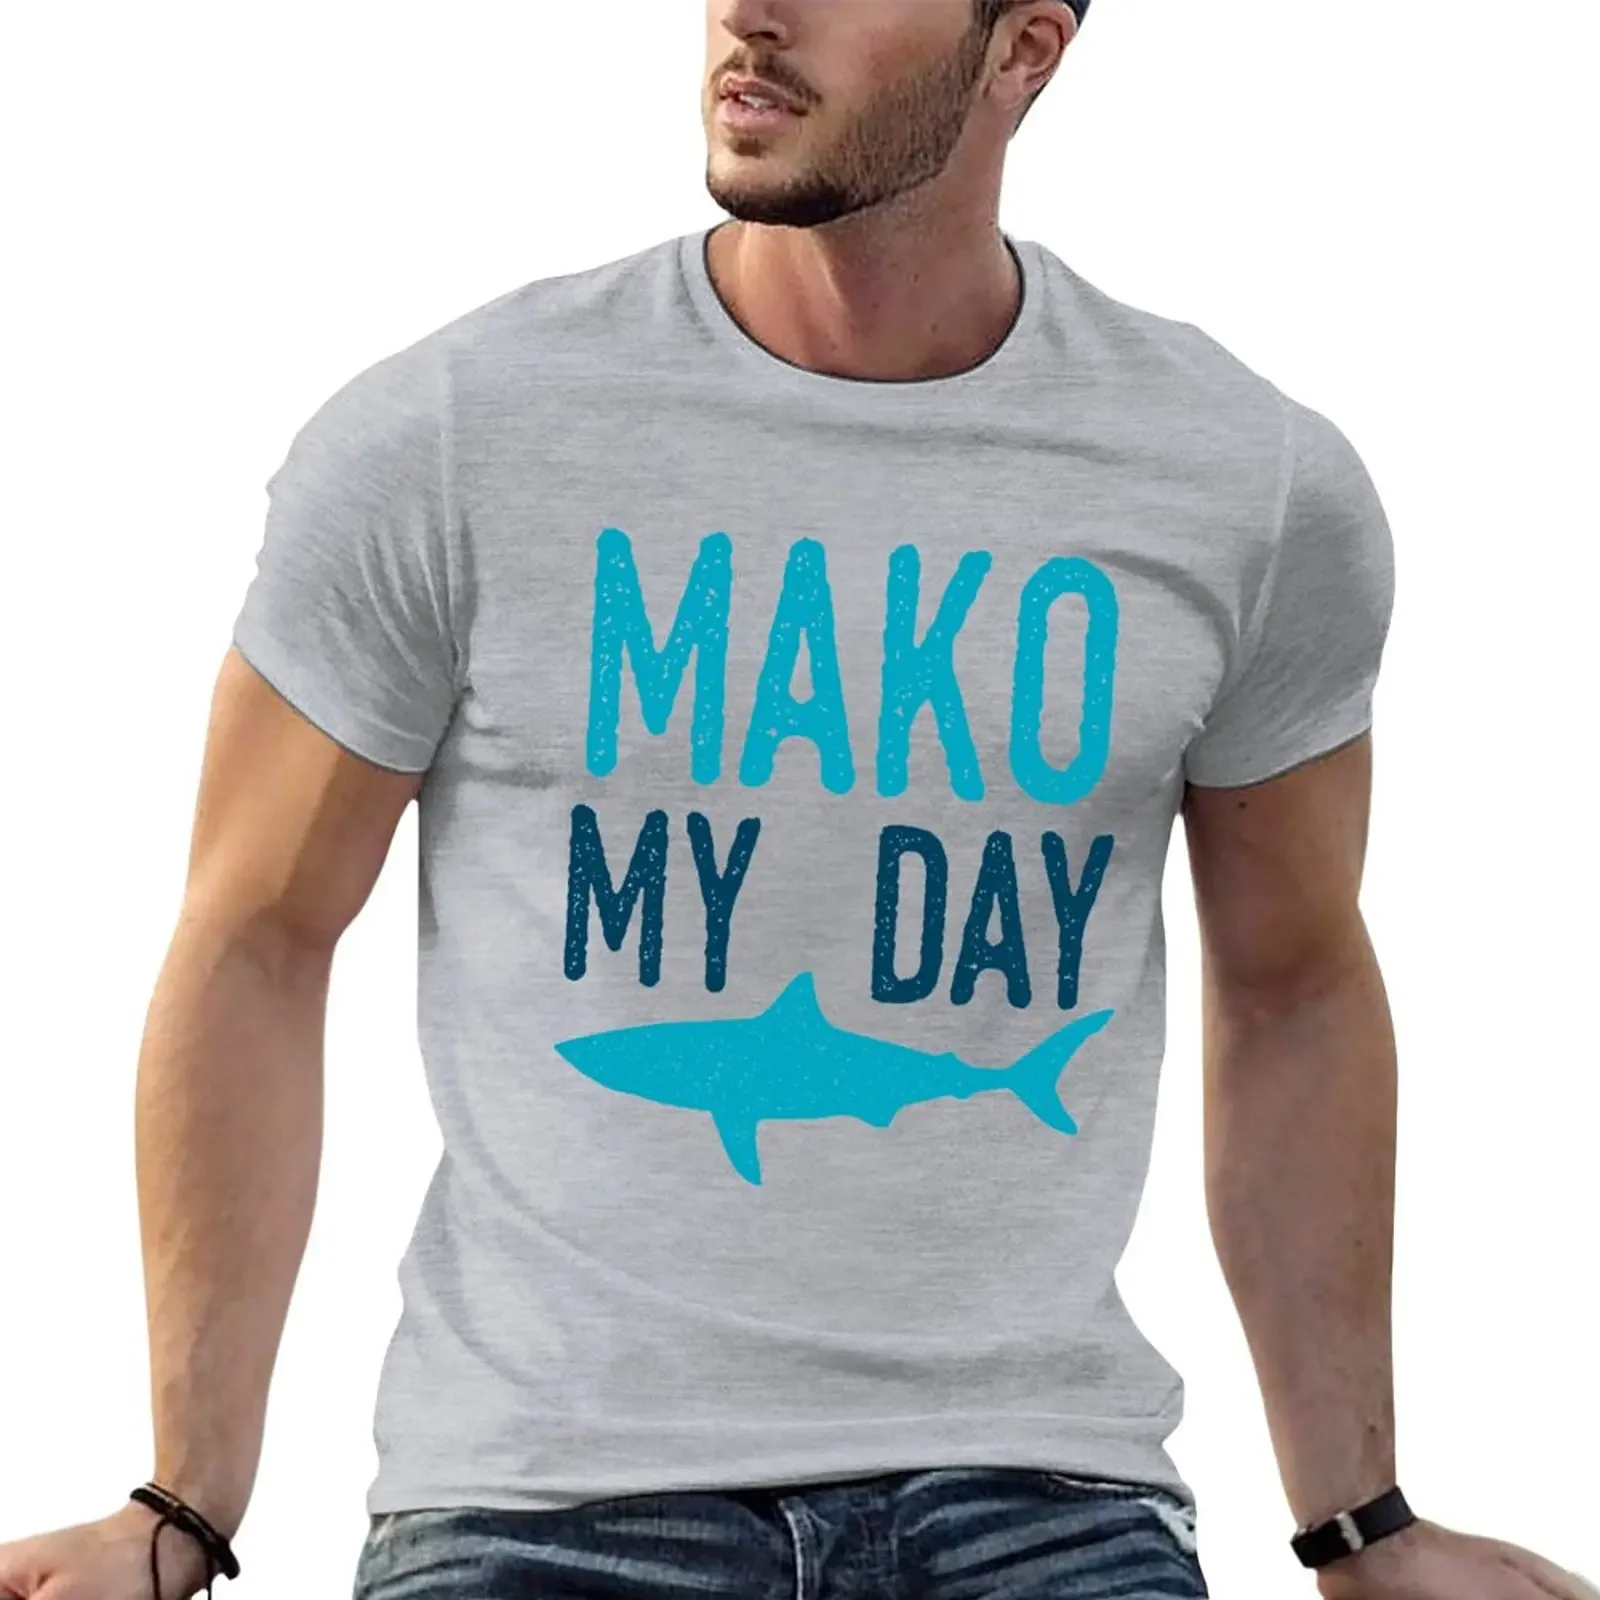 

Mako My Day футболка корейская мода принт животных для мальчиков графика мужские футболки упаковка